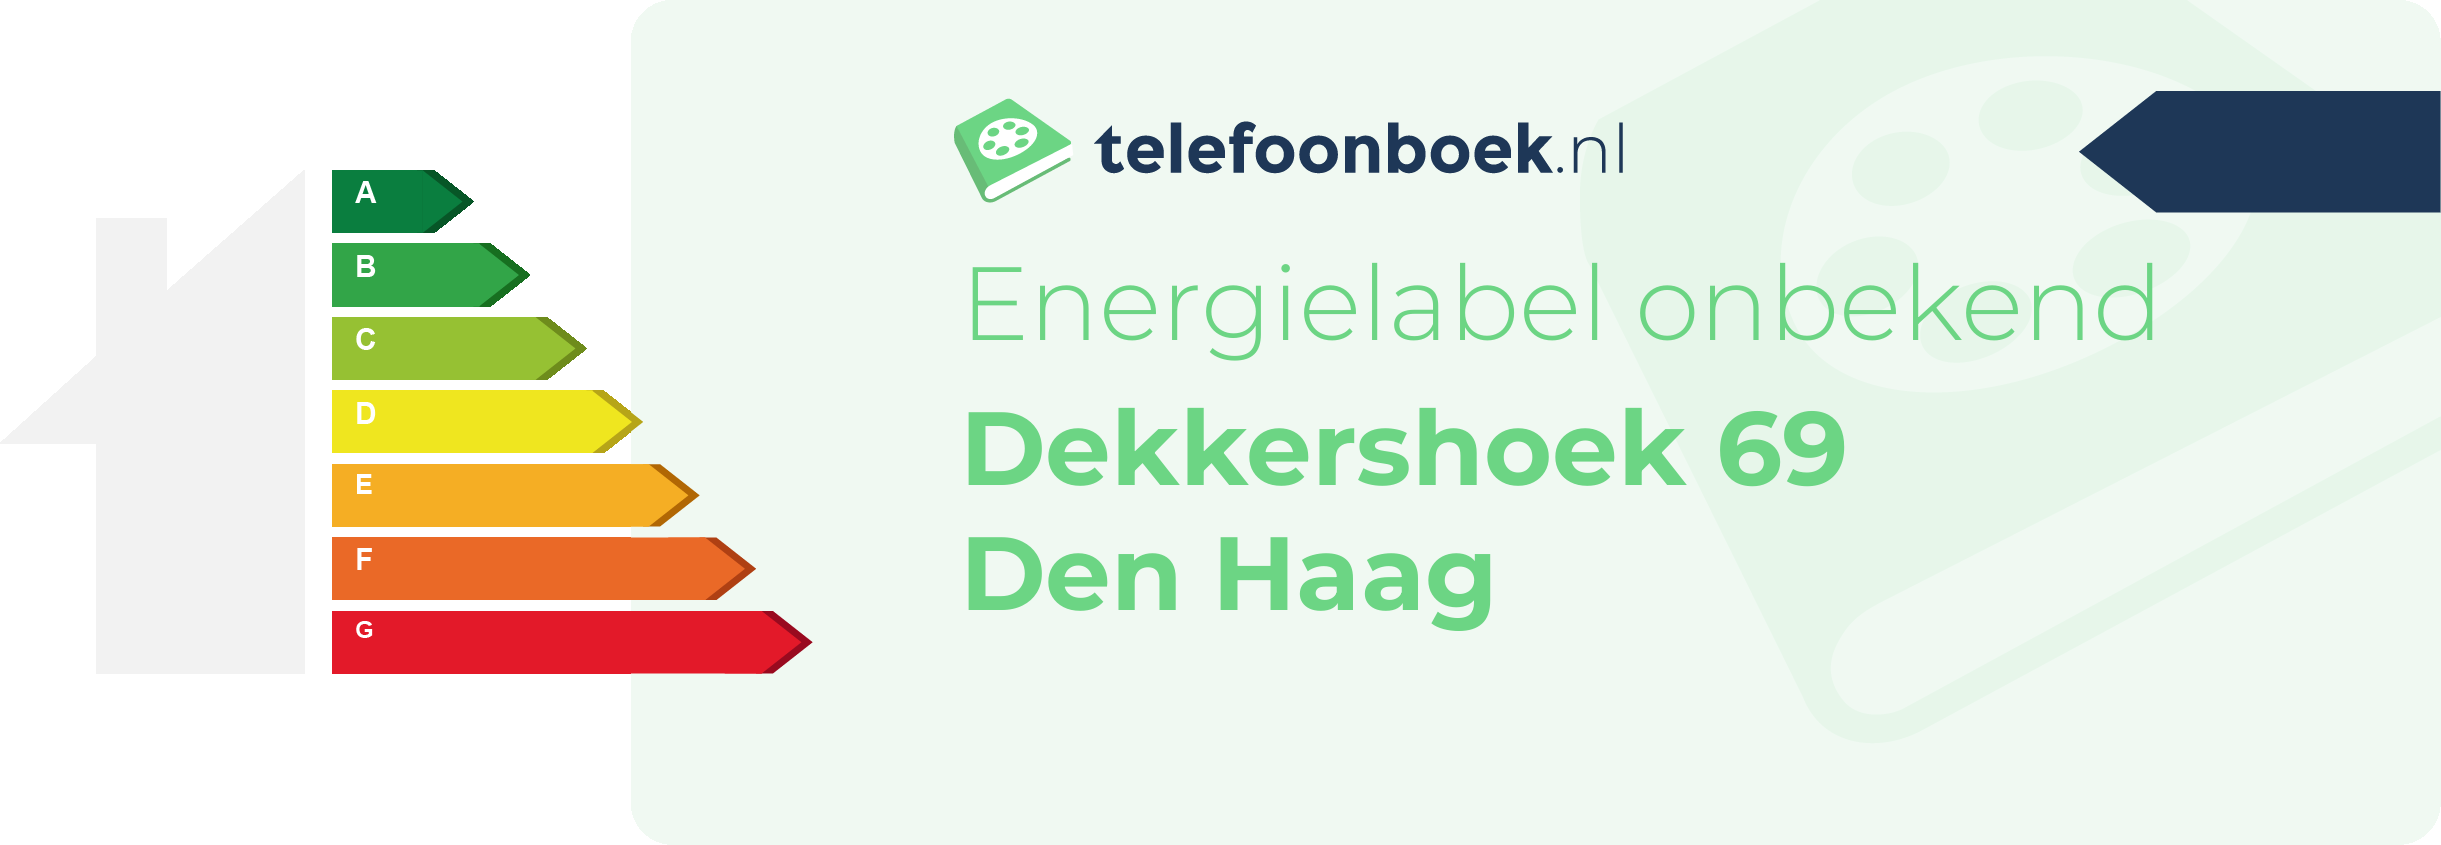 Energielabel Dekkershoek 69 Den Haag